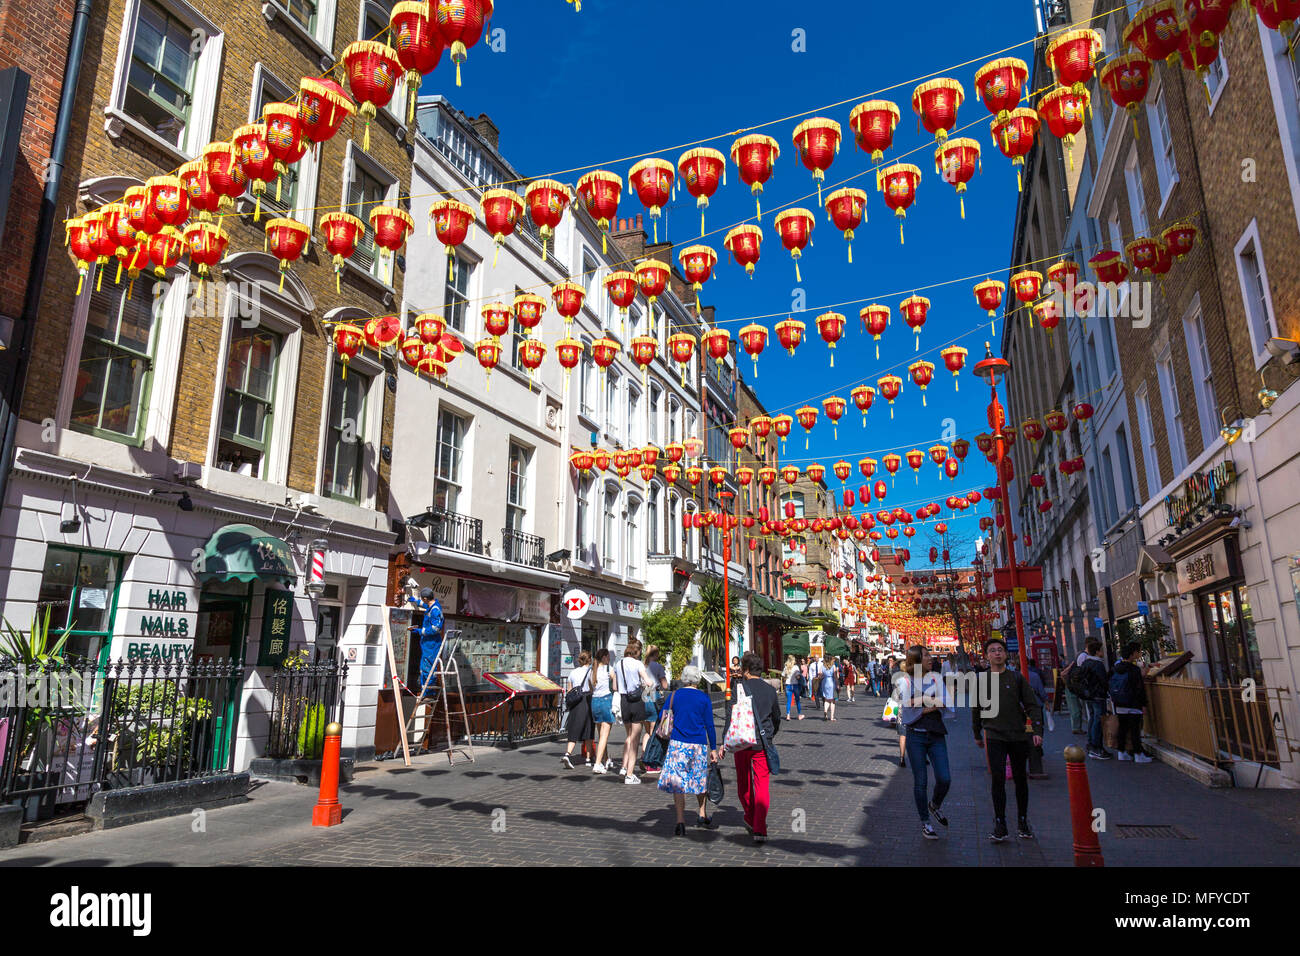 Rote und gelbe Lampions über eine Straße in China Town, London, UK hängen Stockfoto